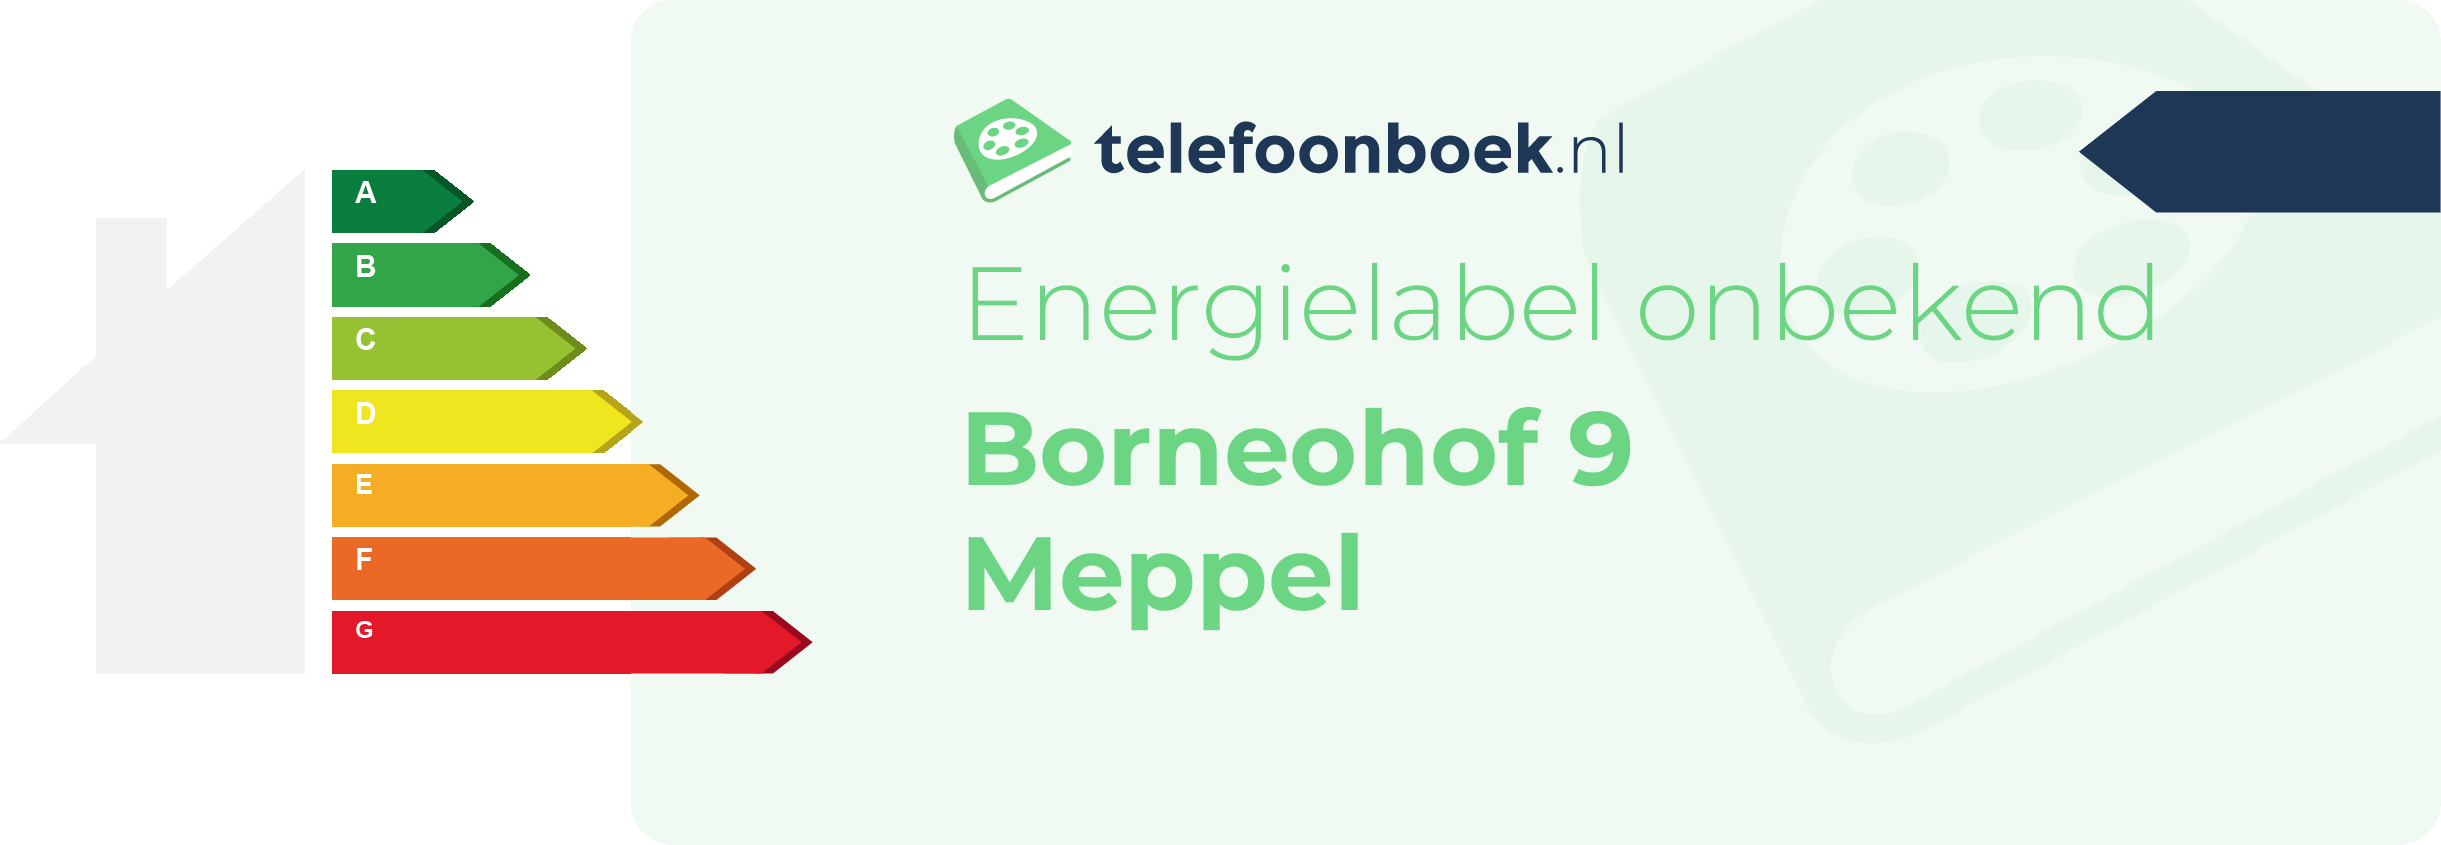 Energielabel Borneohof 9 Meppel